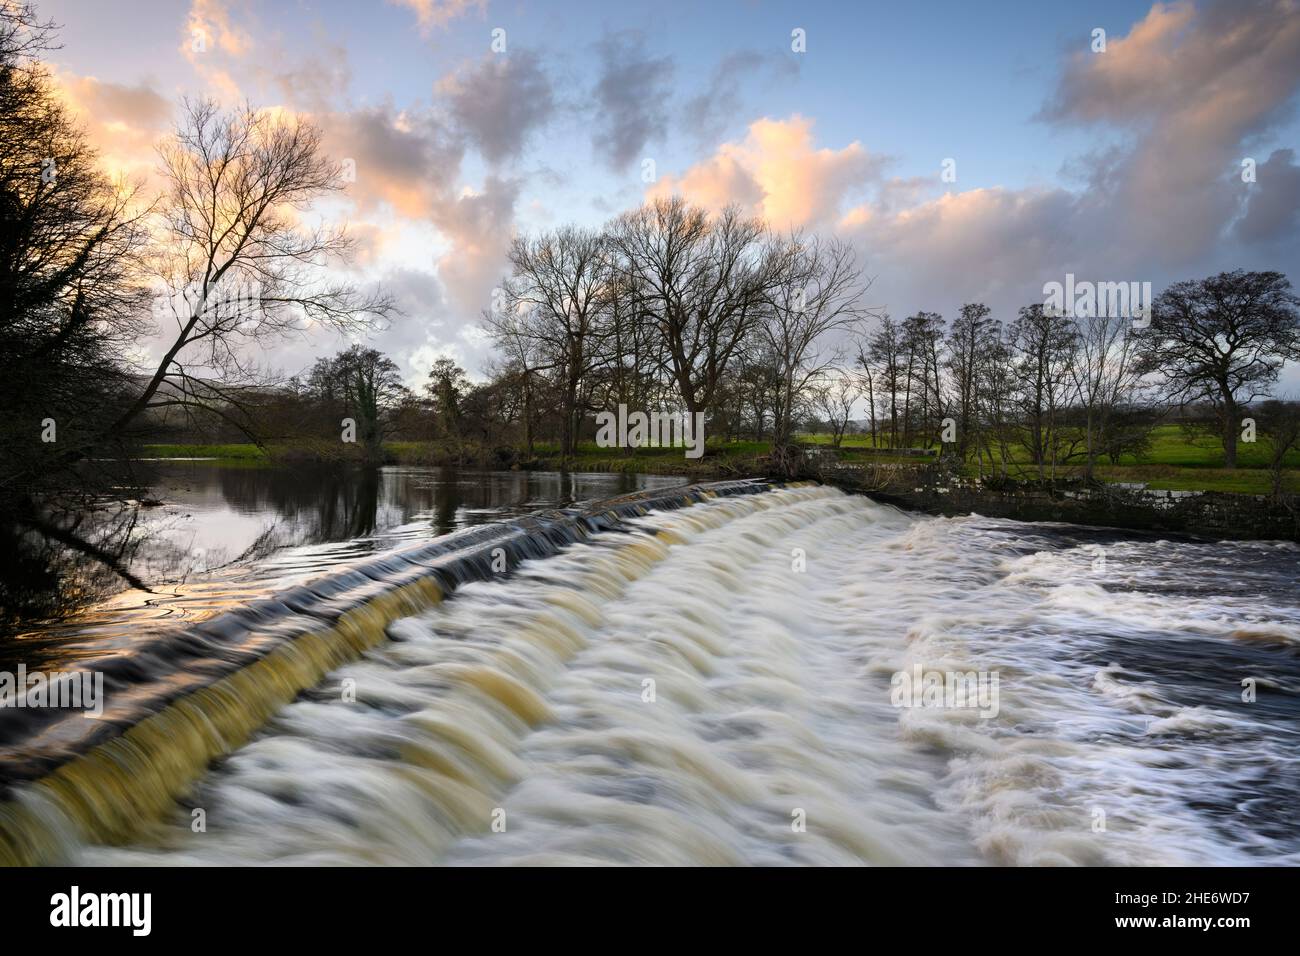 Scenico cielo colorato e paesaggio rurale (acqua che scende a passi di stramazzo, forza idraulica) - River Wharfe, Burley a Wharfedale, Yorkshire, Inghilterra, Regno Unito. Foto Stock